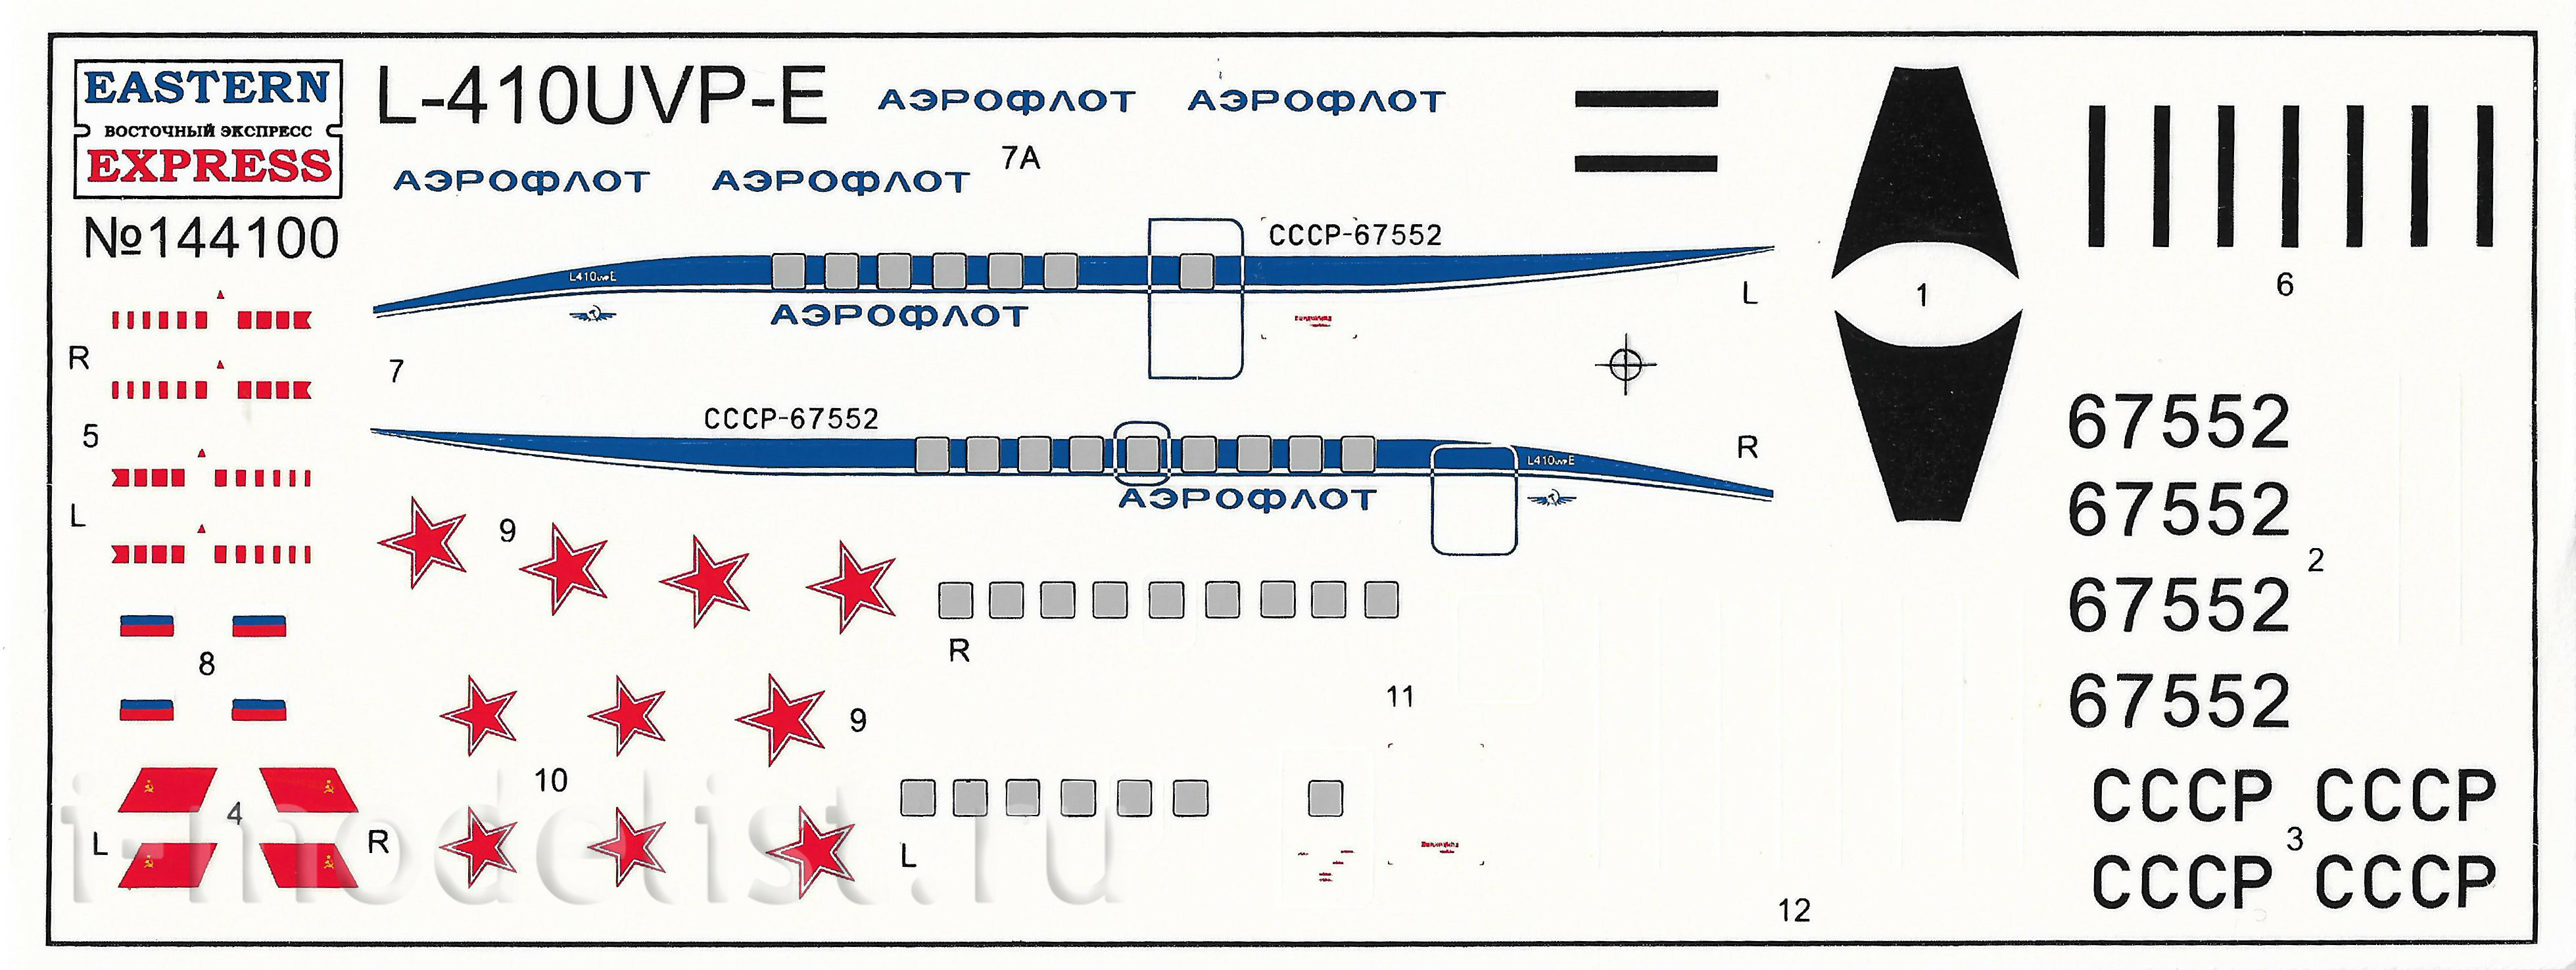 144100 Orient Express 1/144 Passenger aircraft L-410UVP Aeroflot